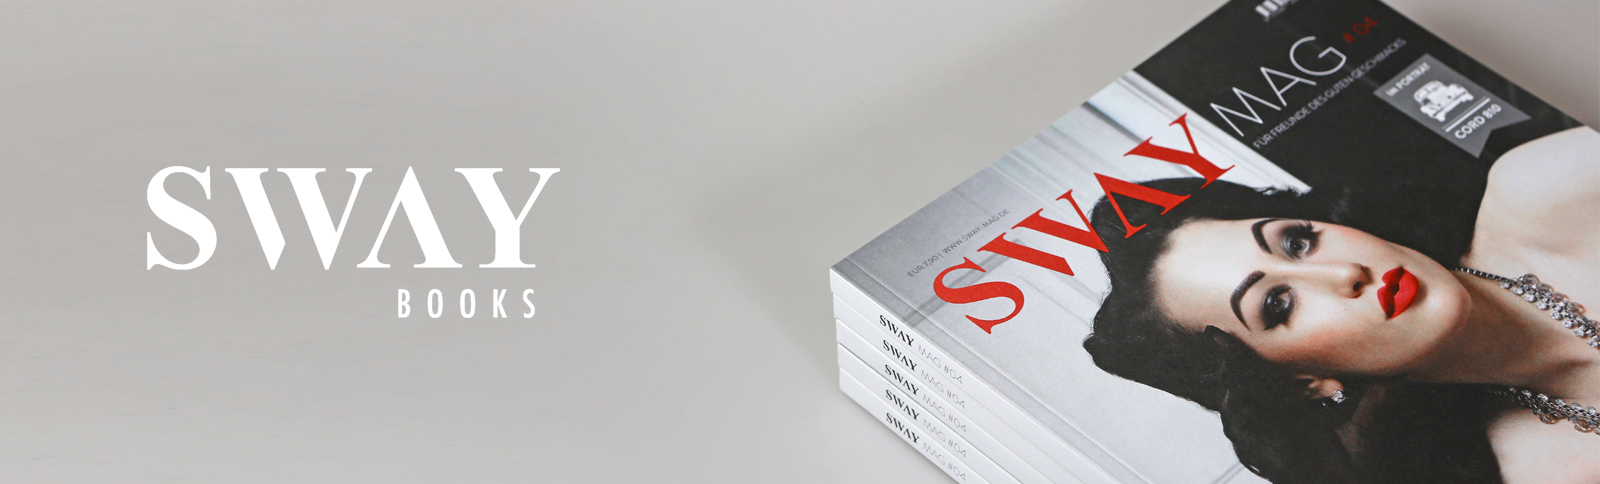 Magazindesign und Produktionsabwicklung SWAY MAG #04 durch Kähler & Kähler. SWAY MAG #04 – Die vierte Ausgabe des Magazins aus dem SWAY Books Verlag ist da!